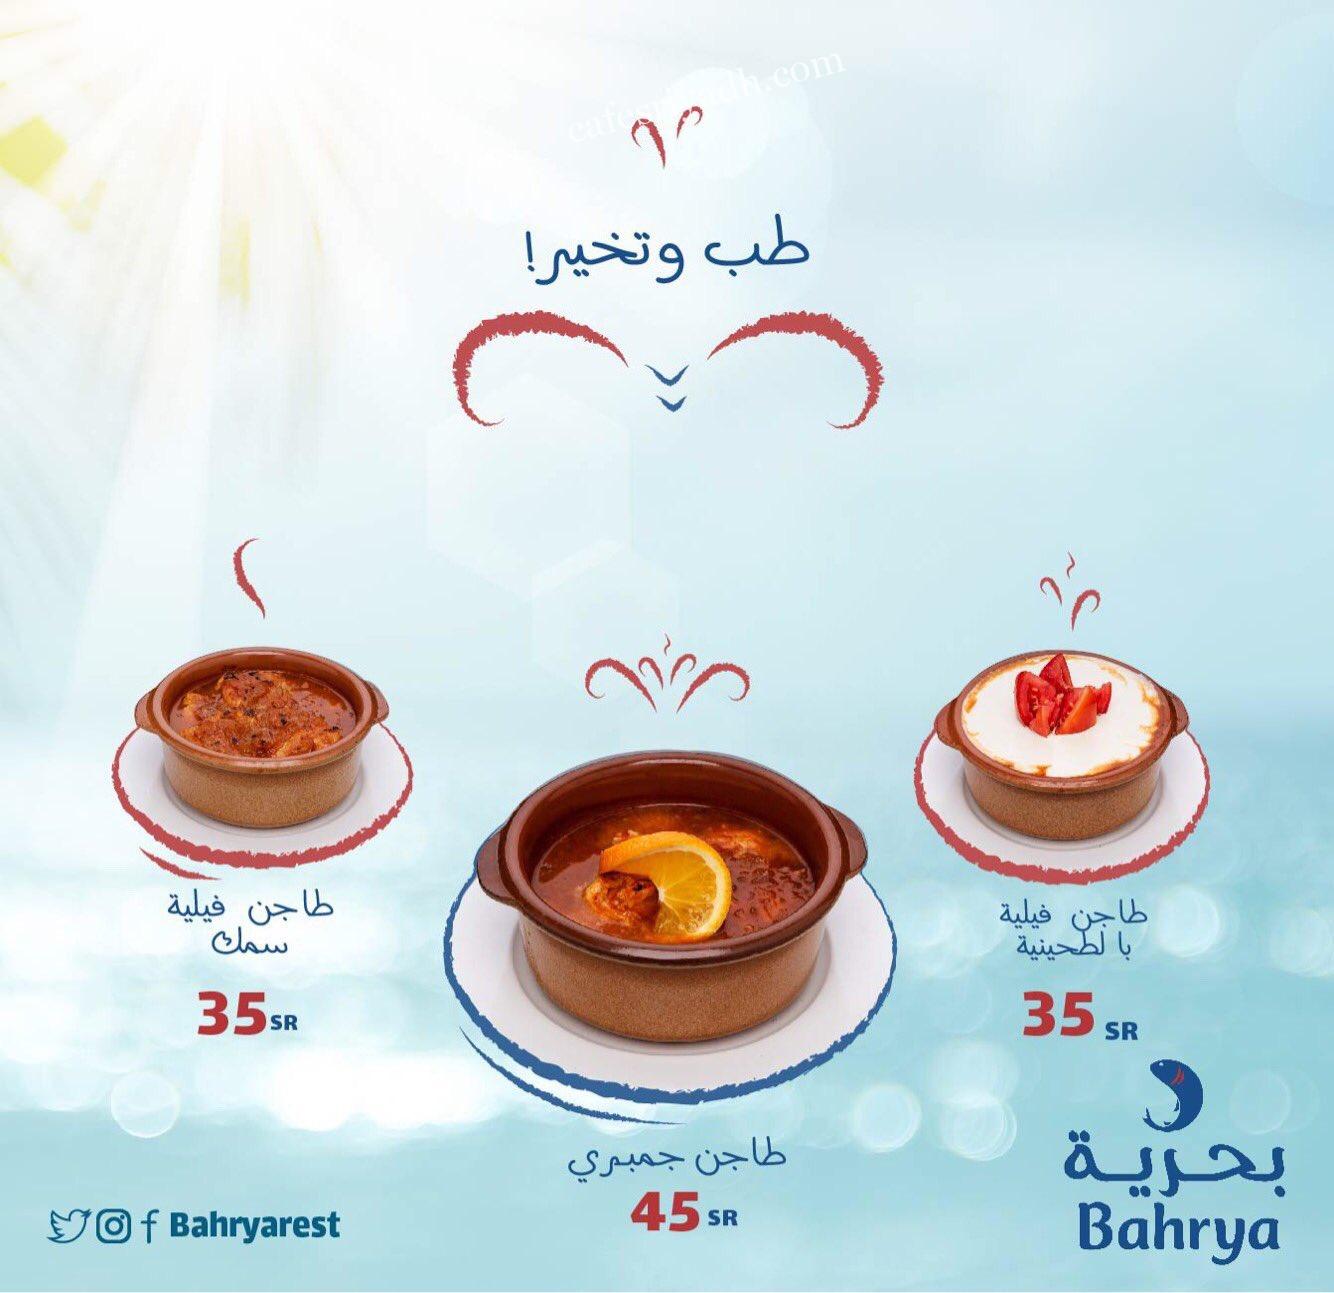 Bahrya menu